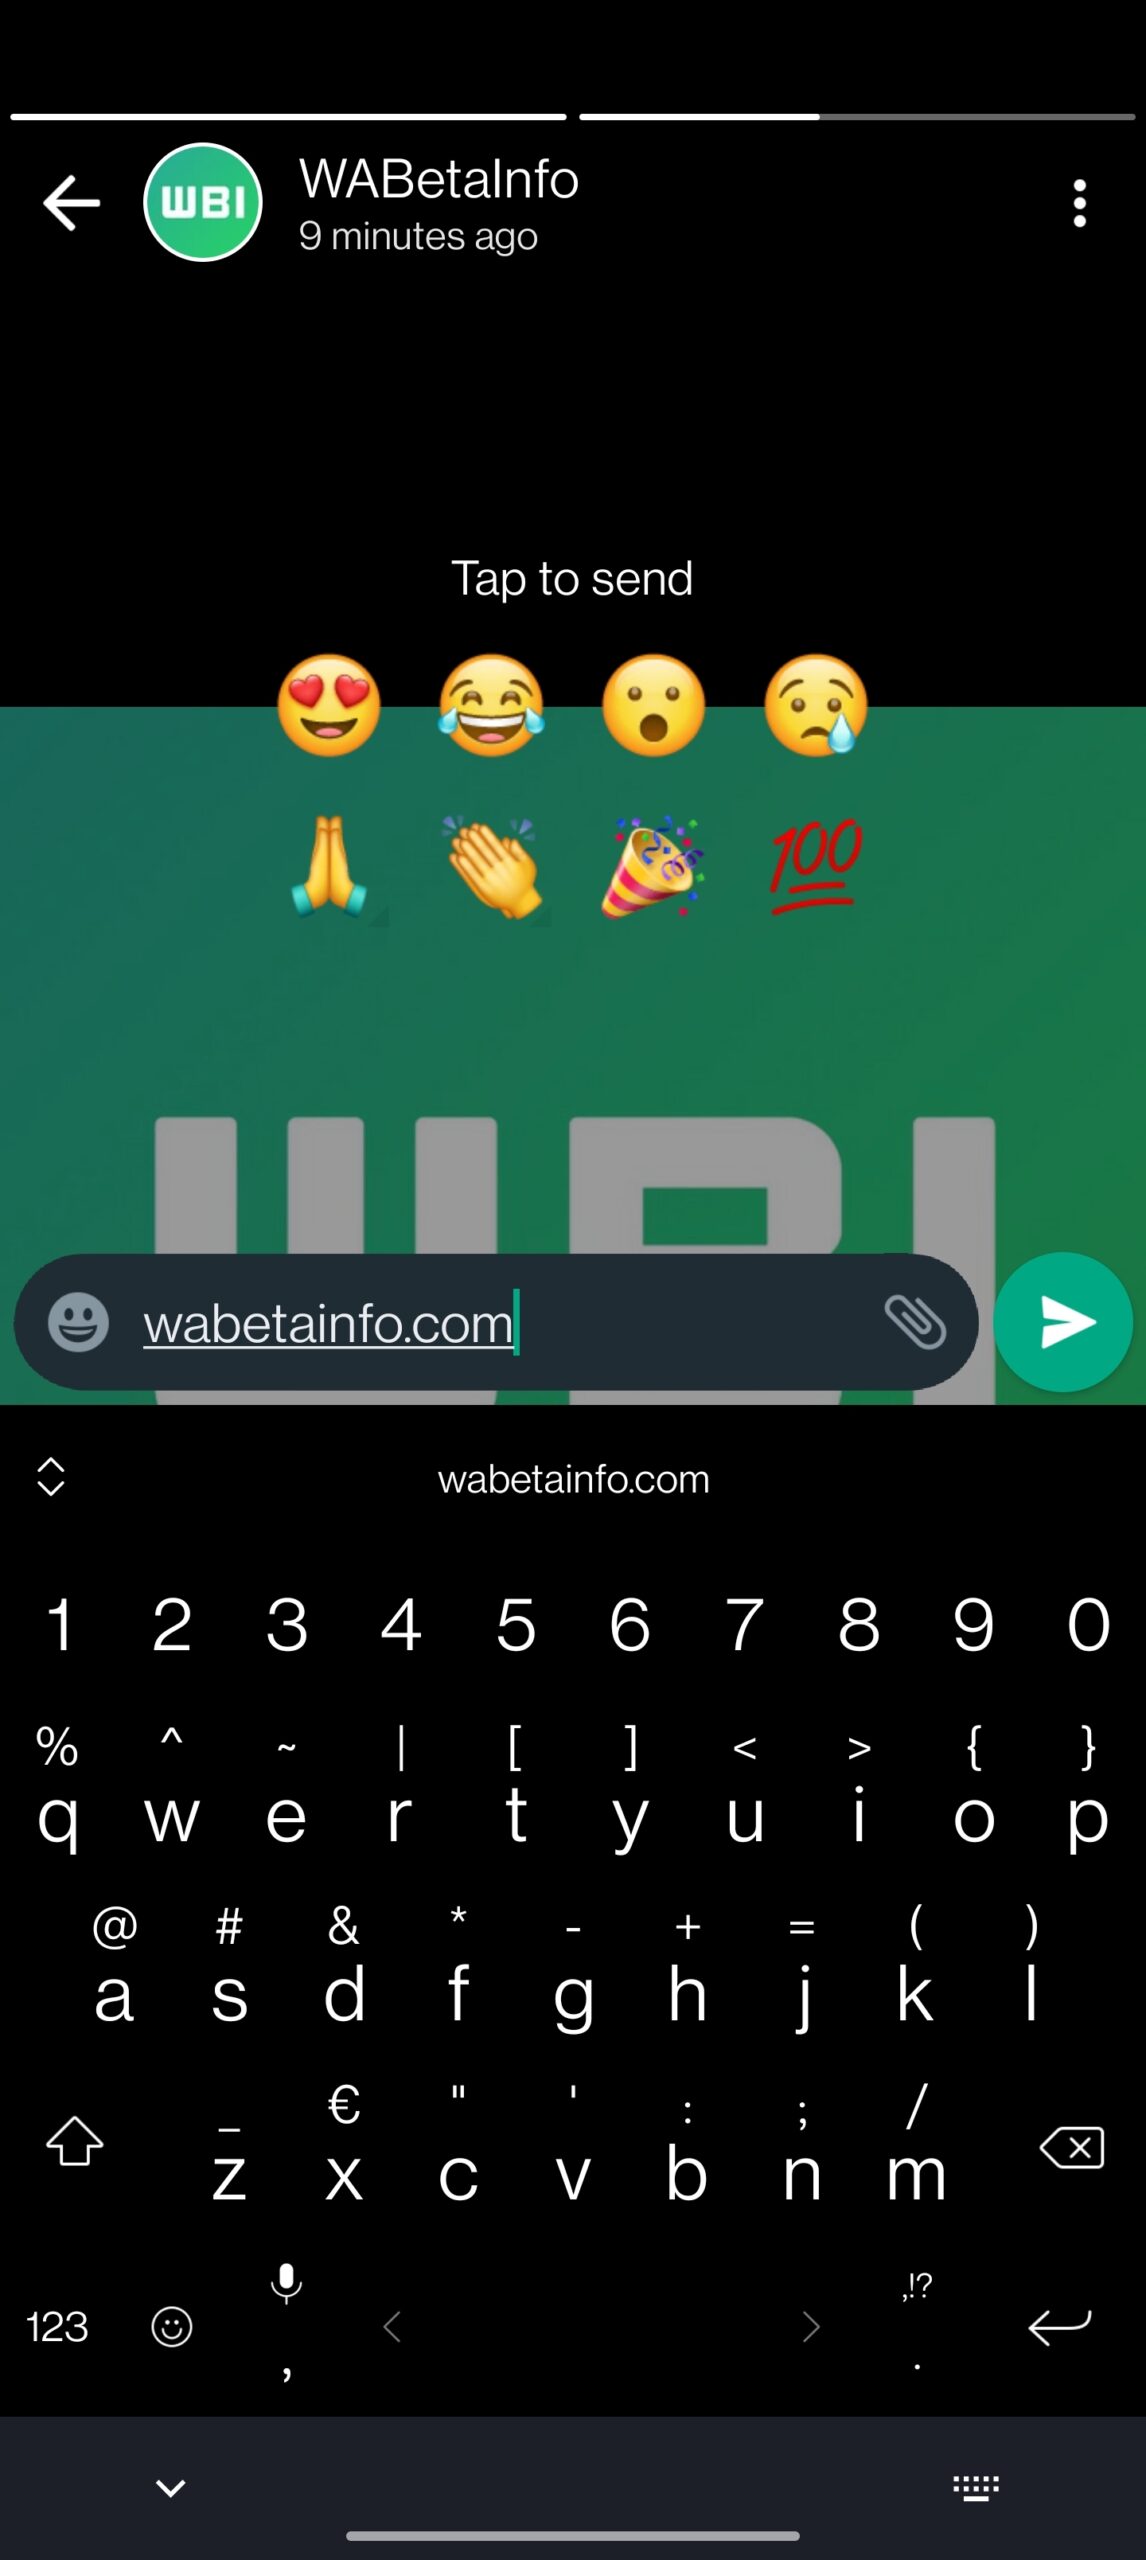 whatsapp beta android reazioni rapide aggiornamenti di stato